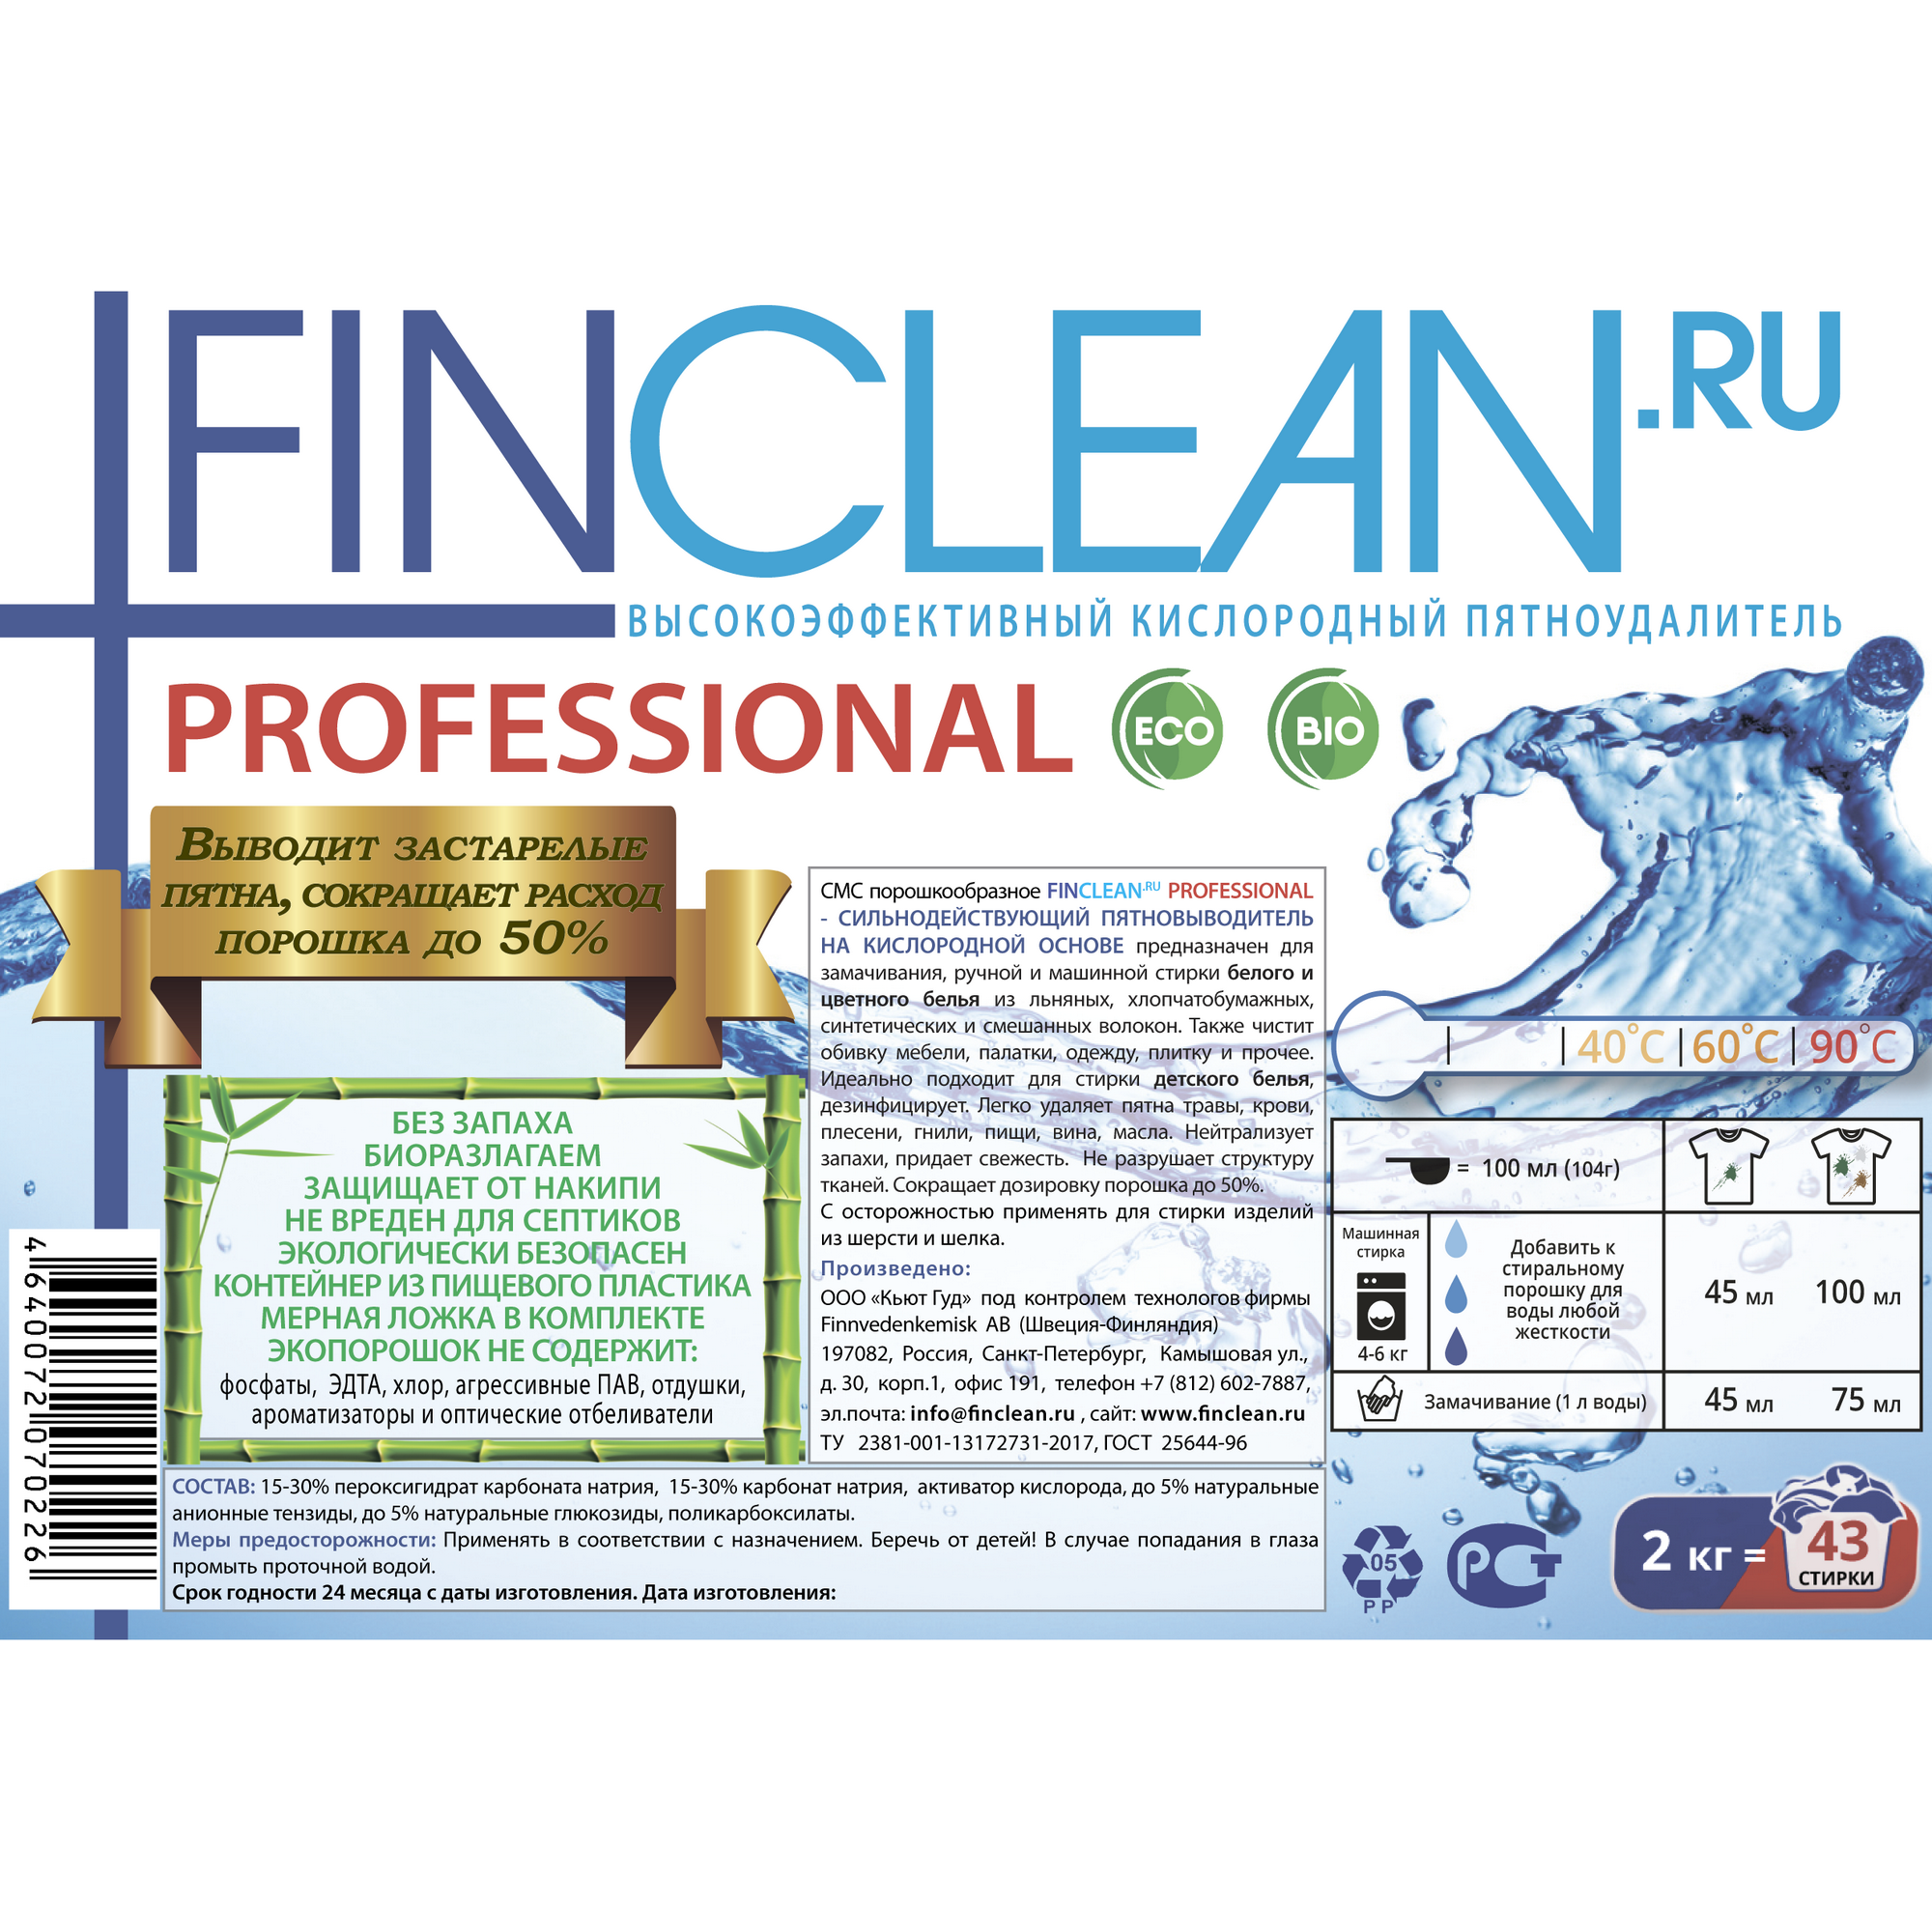 Кислородный пятновыводитель FINCLEAN.RU Professional 2 кг - 43 стирки - фото 3